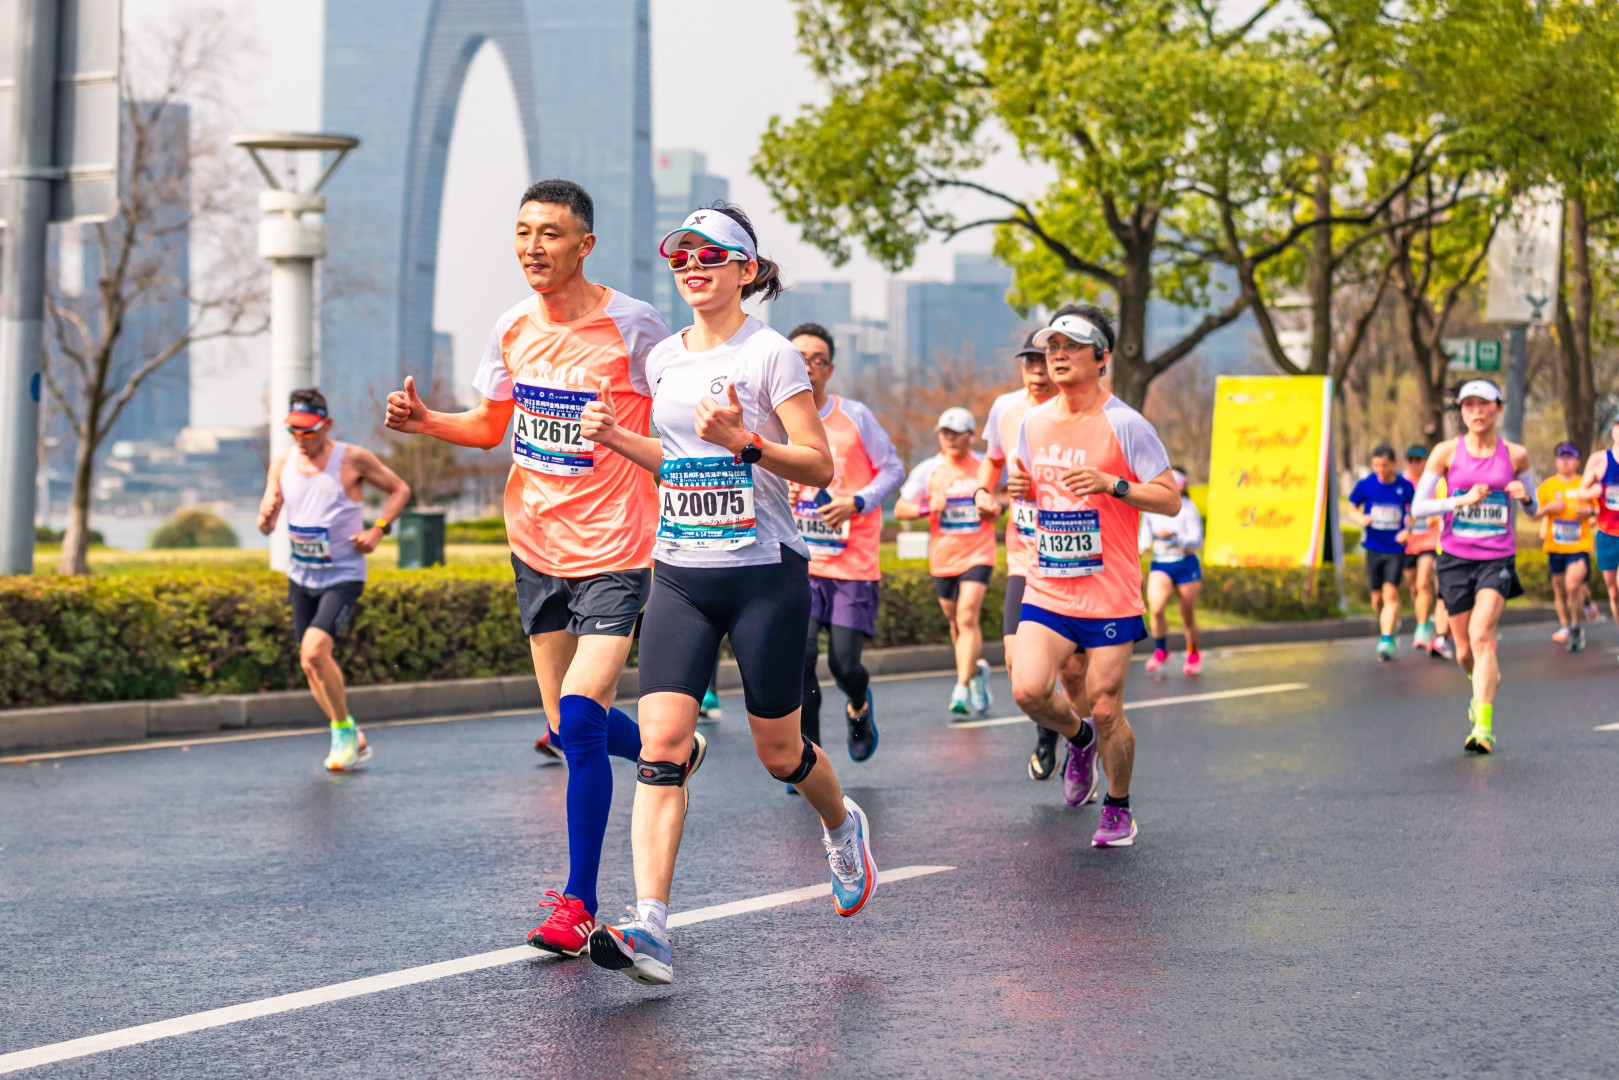 2018深圳国际马拉松欢乐开跑,3万人挥汗如雨感受深圳魅力